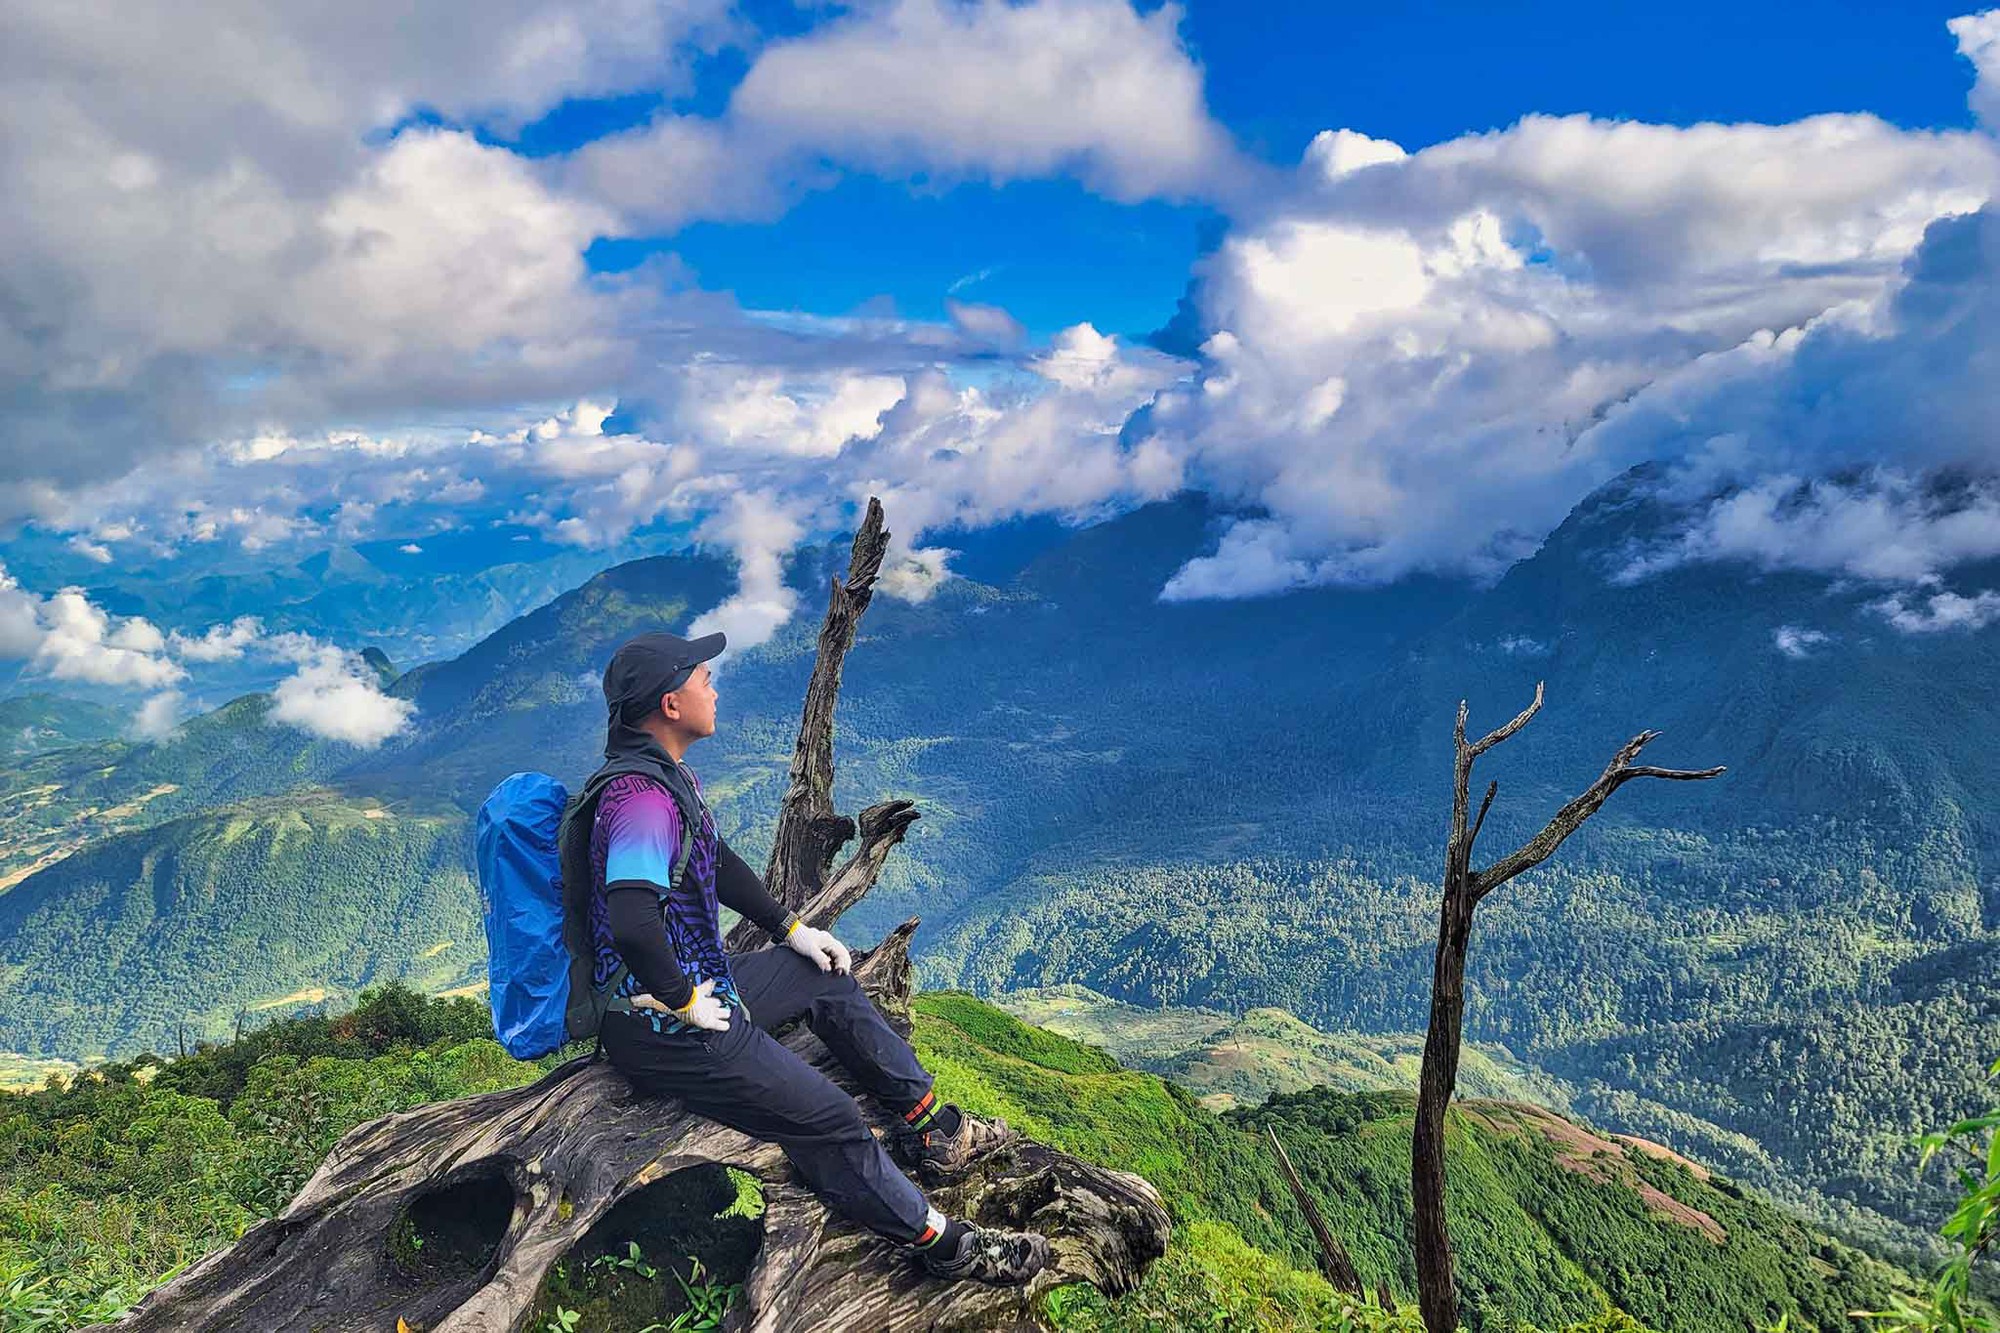 Băng rừng 2 ngày ngắm ‘quỷ núi’, săn hốc đá hình ‘trái tim’ Nhìu Cồ San-một ngọn núi cao ở Lào Cai - Ảnh 8.